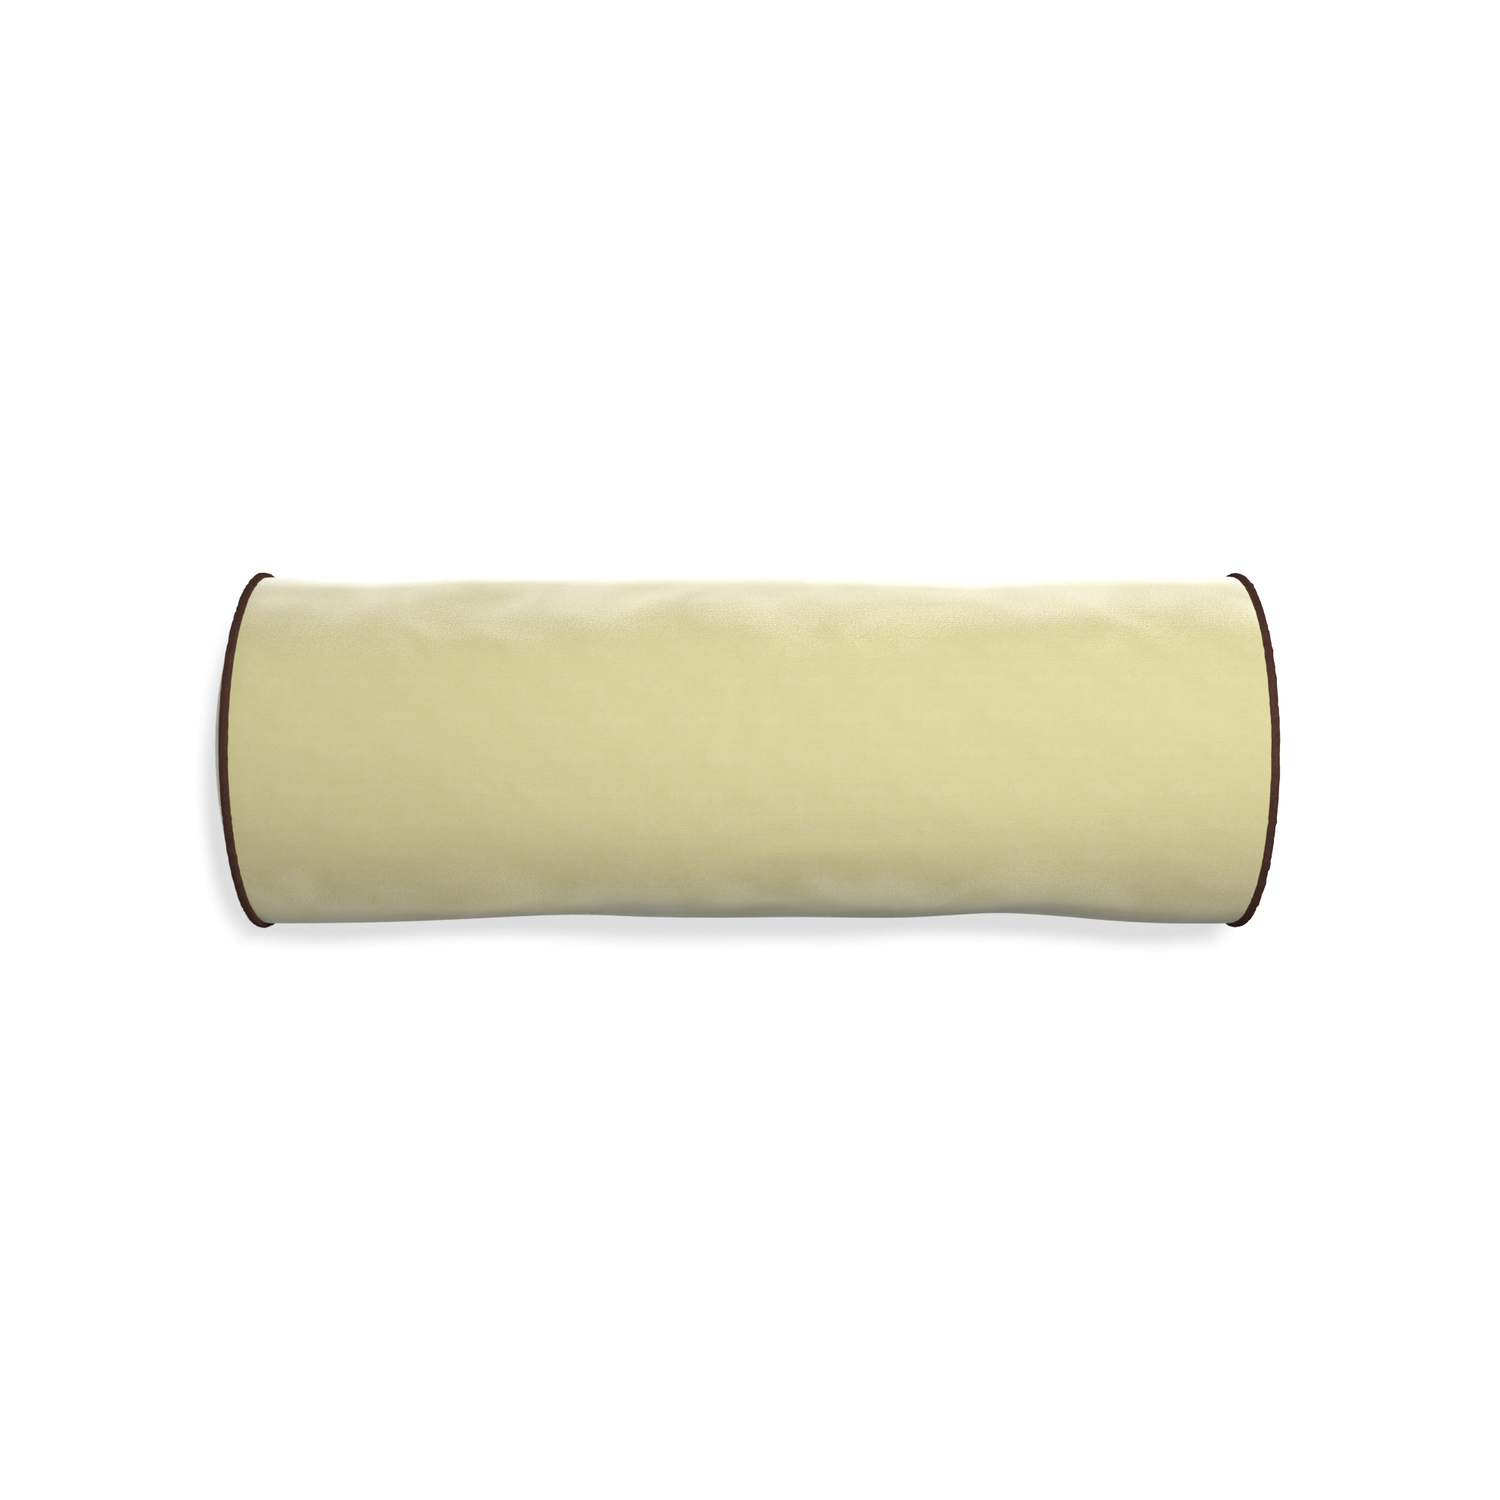 Bolster pear velvet custom pillow with w piping on white background